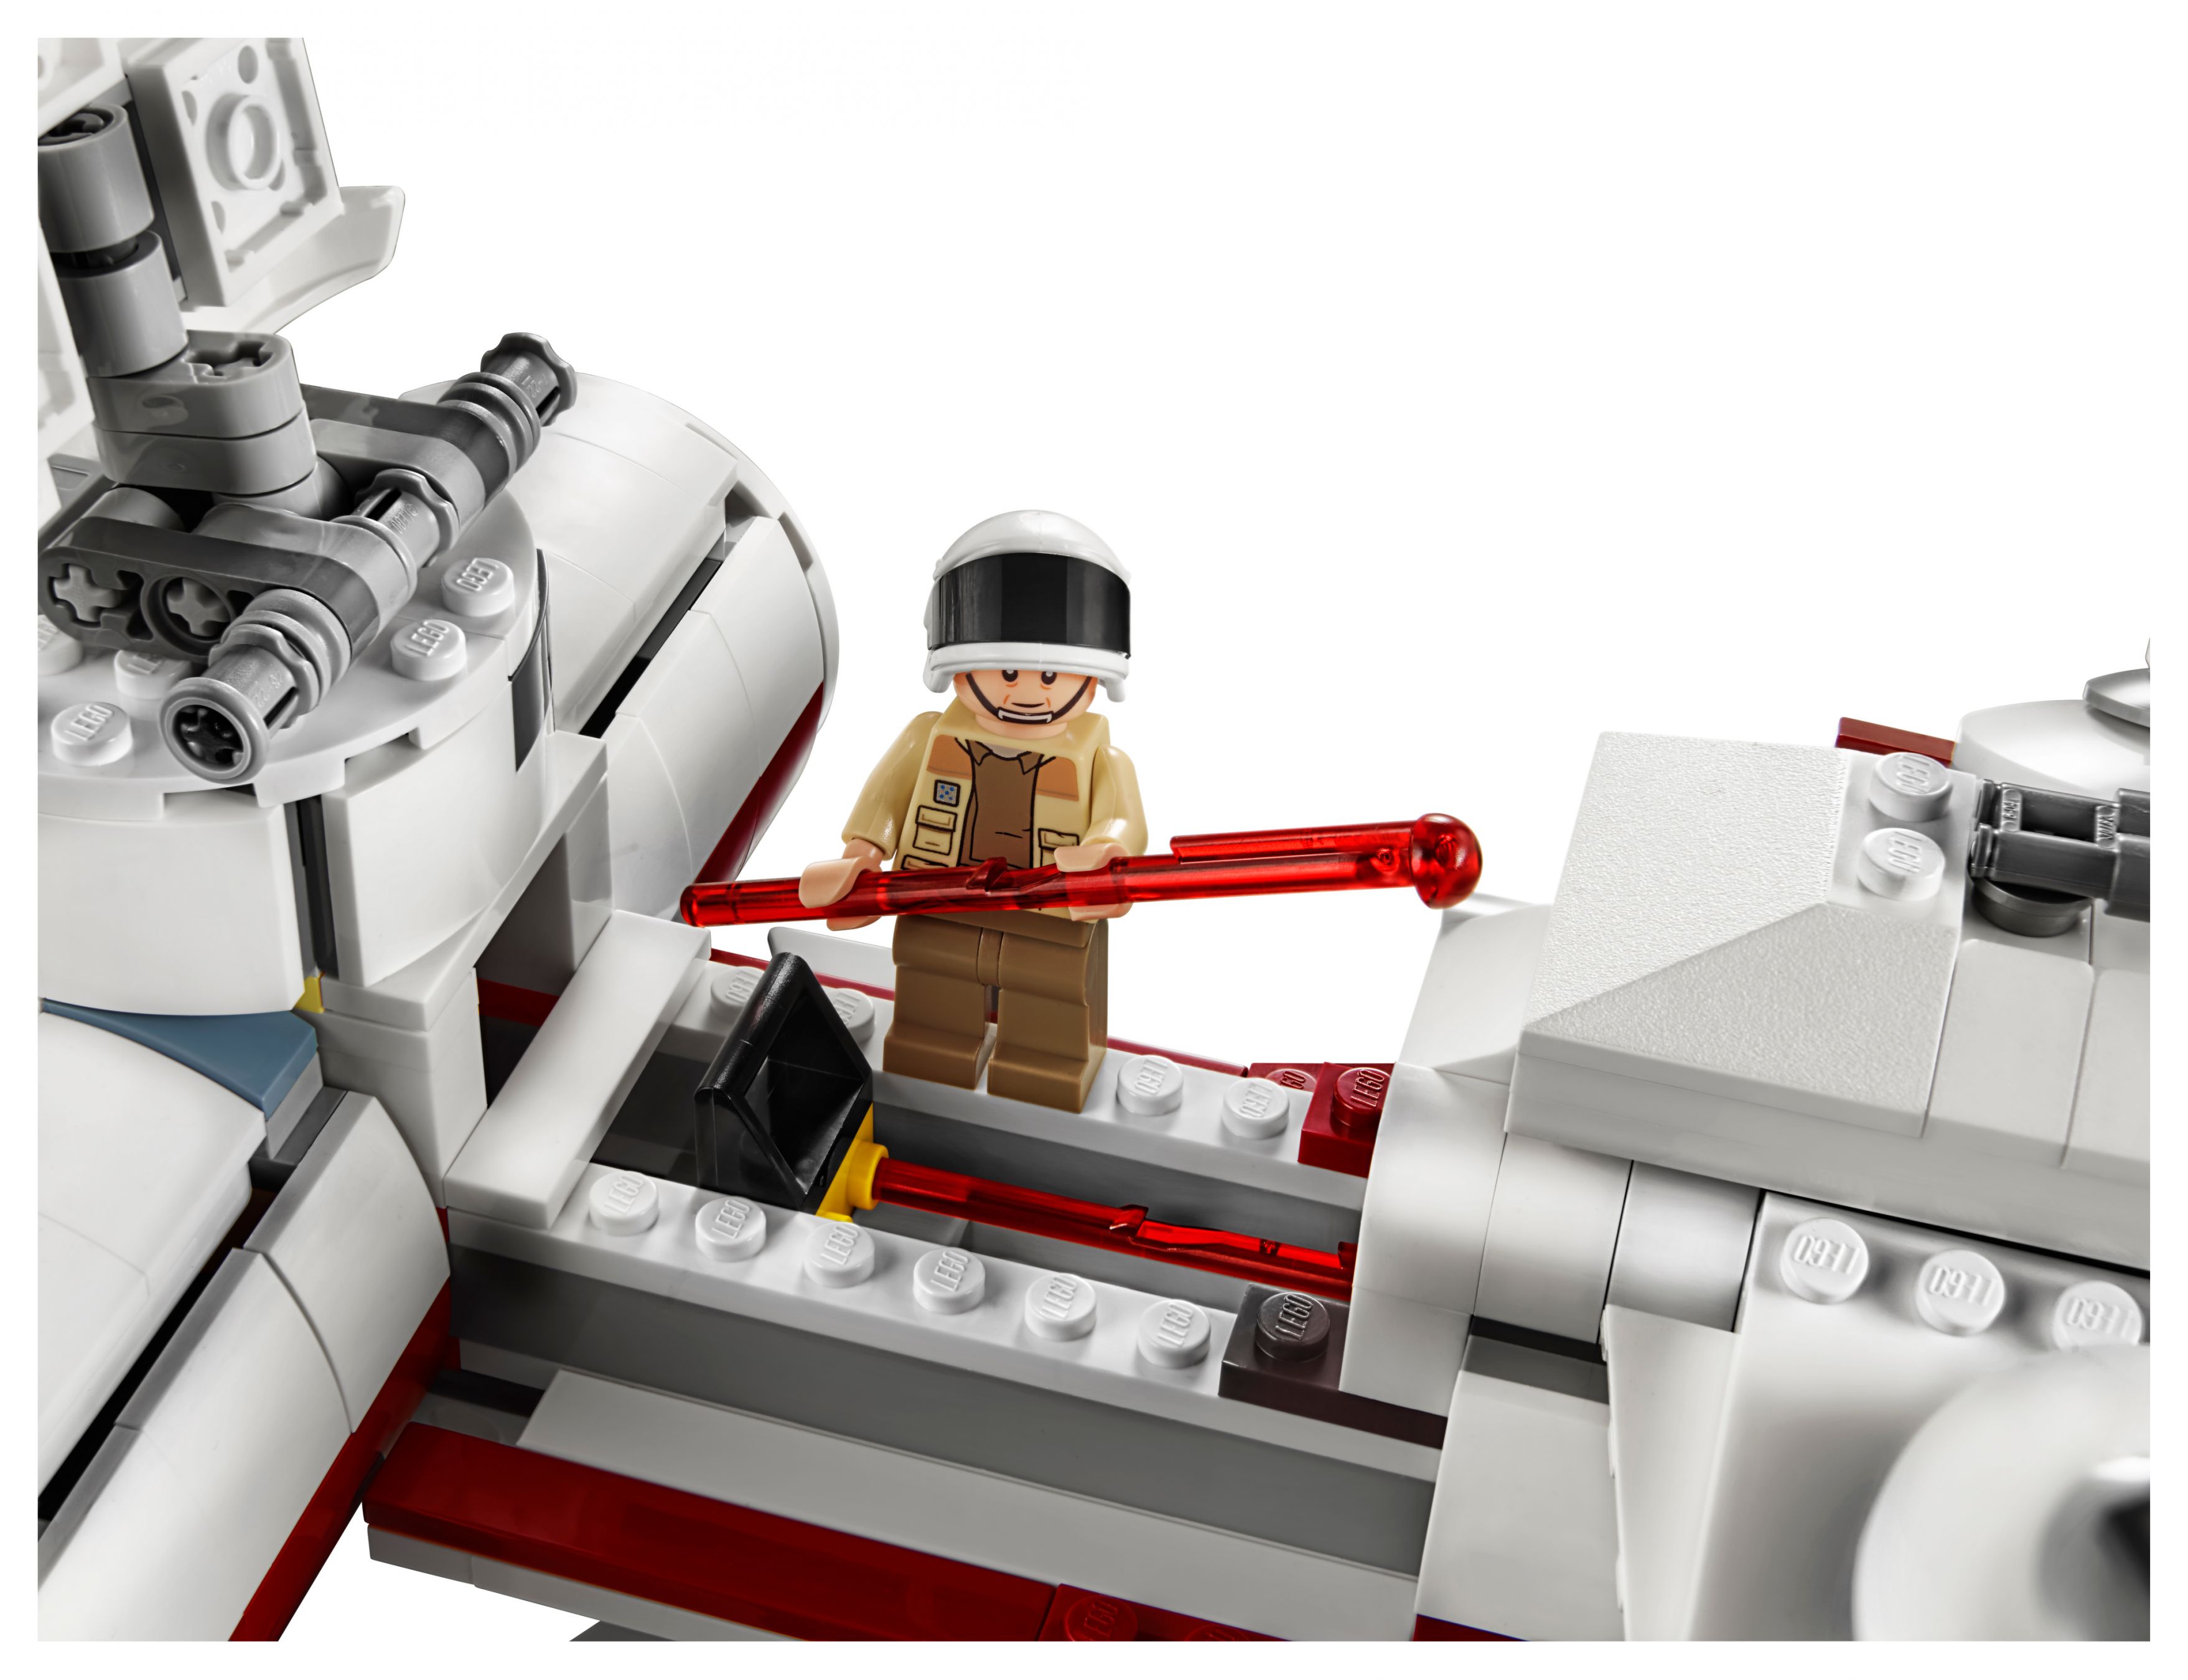 LEGO Star Wars 75244 Tantive IV LEGO_75244_alt5.jpg